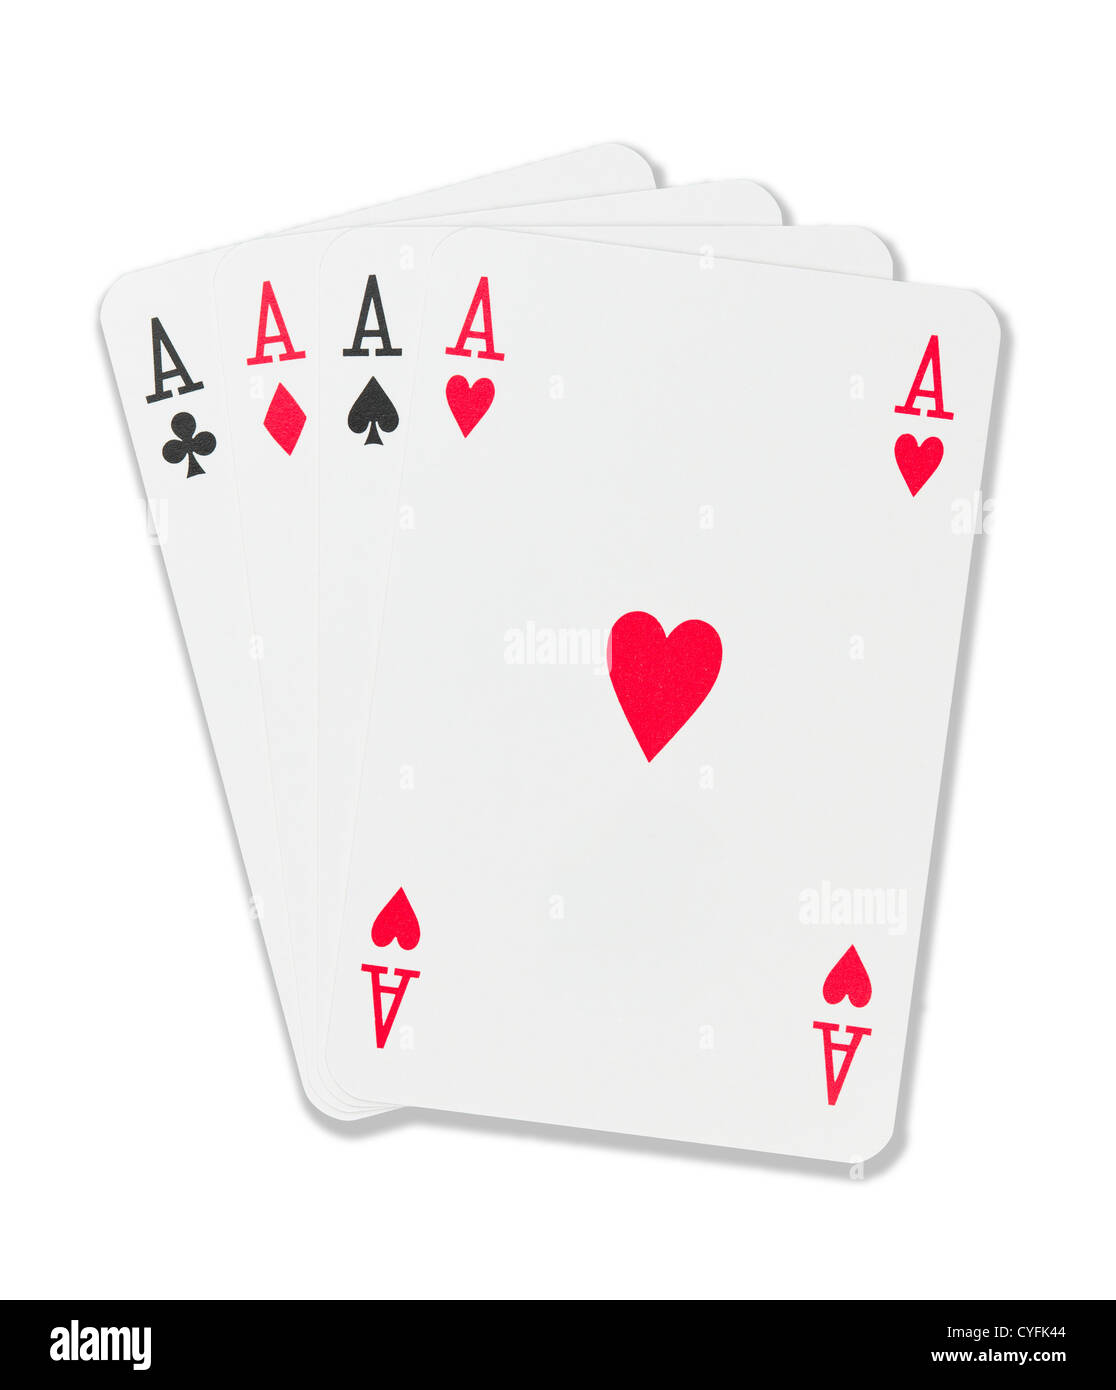 Cuatro ases. Cartas de póker Stock Photo